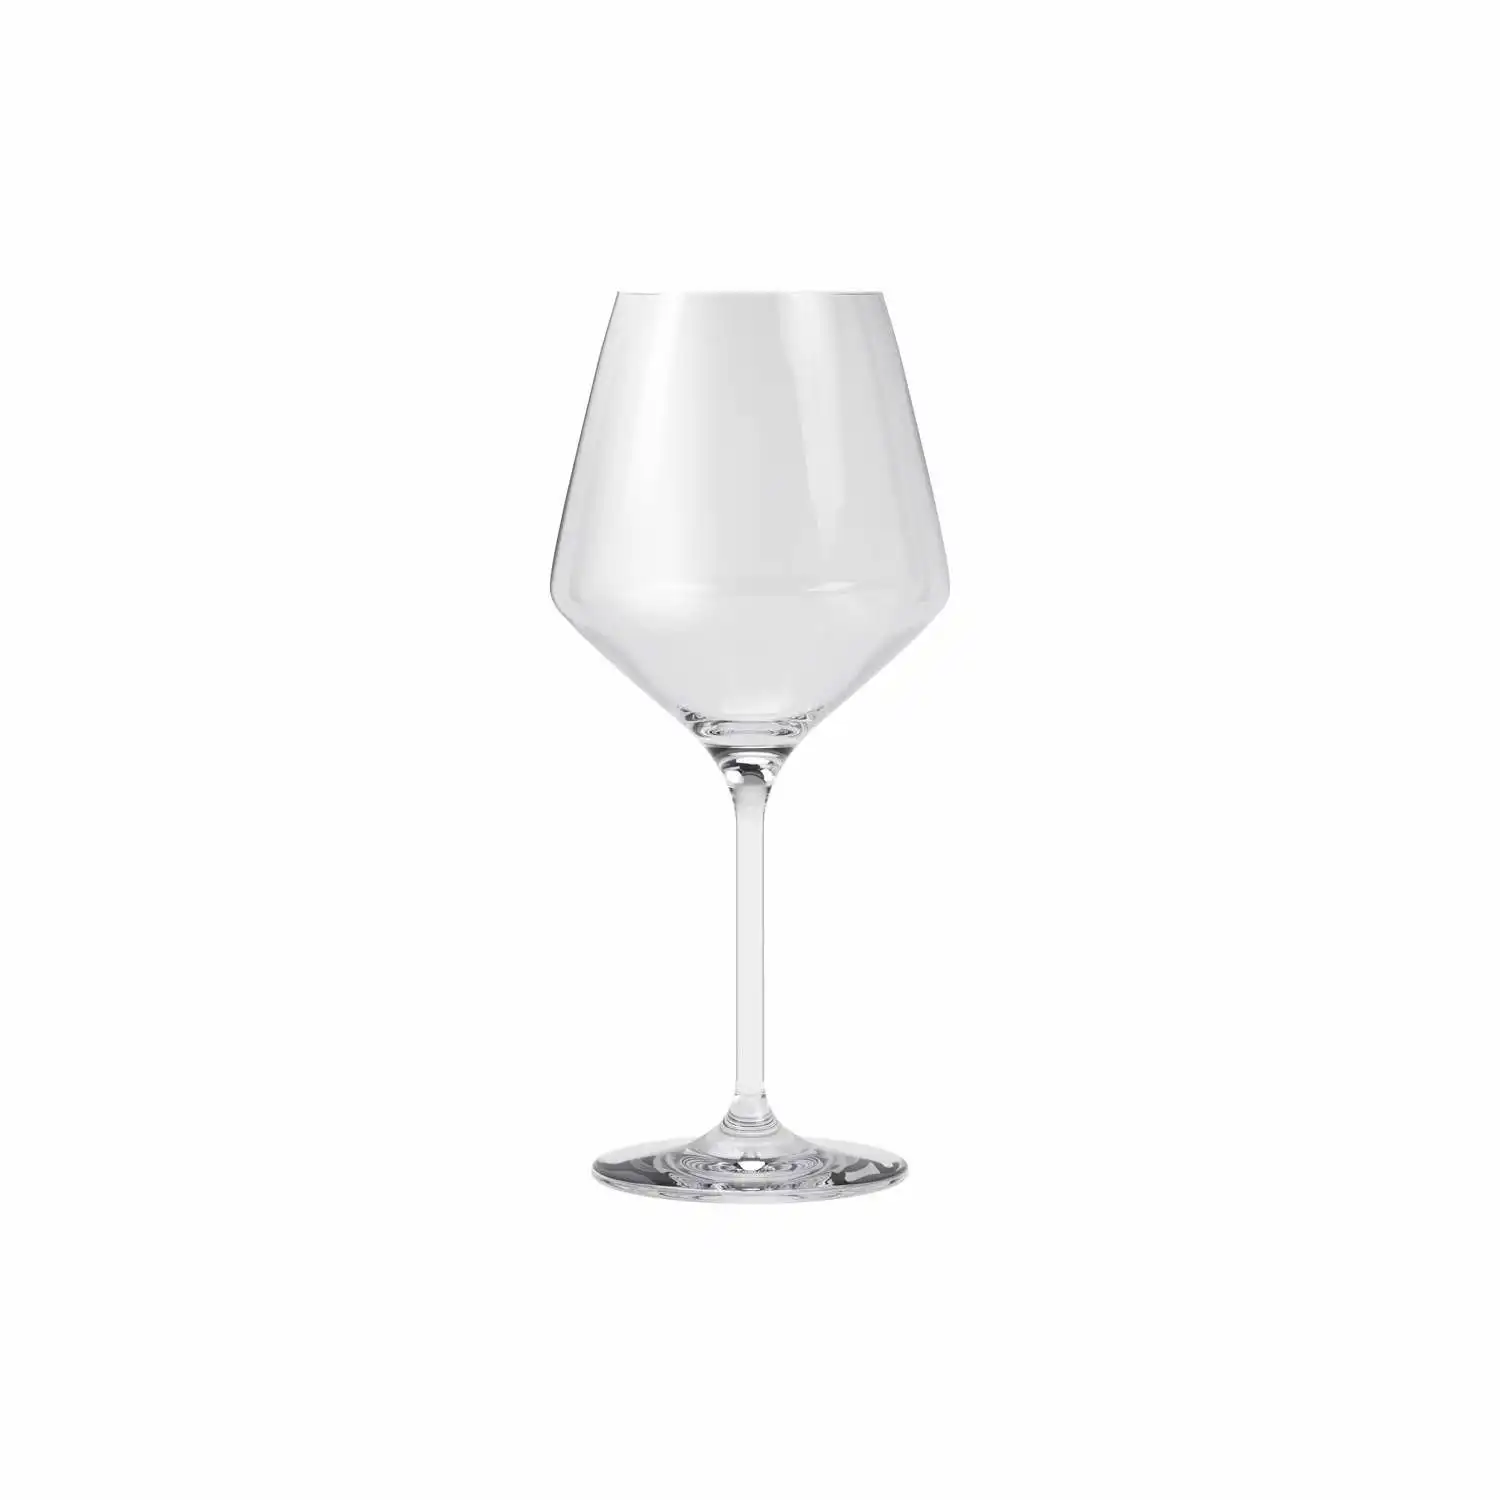 541205-white-wine-glass-legio-nova-1pcs-noregi.webp